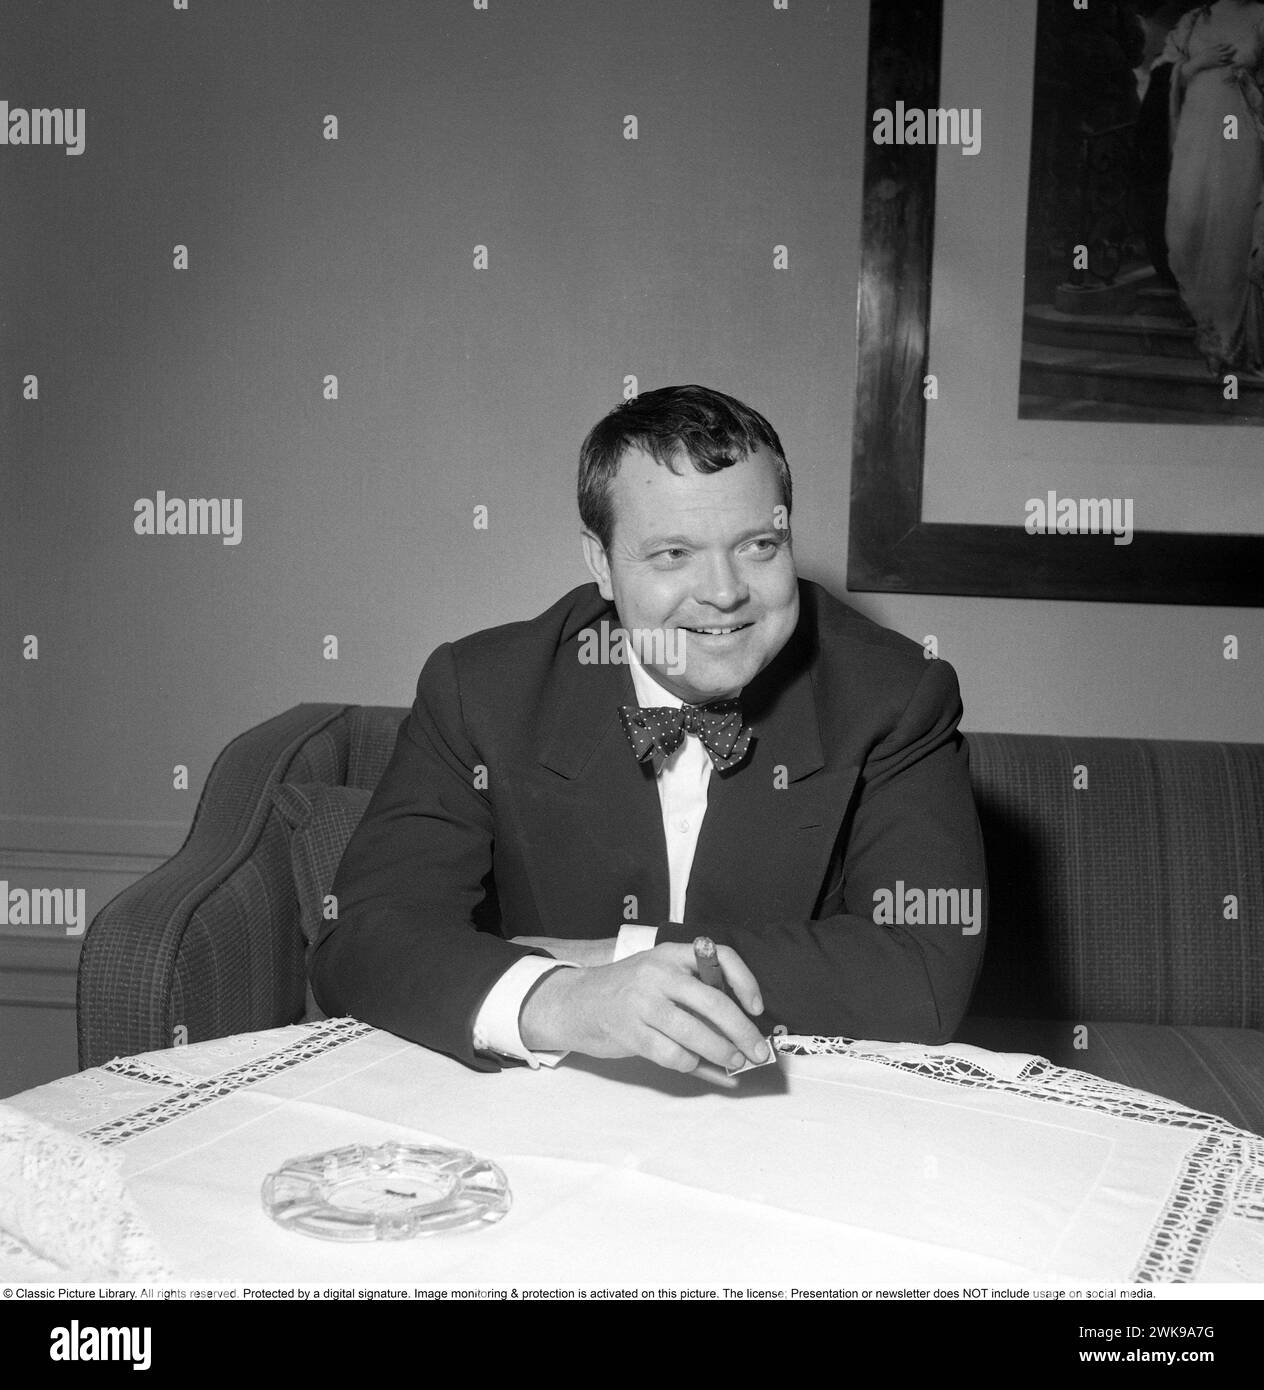 George Orson Welles (6 maggio 1915 – 10 ottobre 1985) è stato un regista, attore, scrittore, produttore e mago statunitense ricordato per il suo lavoro innovativo nel cinema, nella radio e nel teatro. È considerato tra i più grandi e influenti registi di tutti i tempi. La foto fu scattata quando visitò la Svezia nel febbraio 1952. Conard ref 1923 *** didascalia locale *** © Libreria di immagini classica. Tutti i diritti riservati. Protetto da una firma digitale. Il monitoraggio e la protezione delle immagini sono attivati su questa immagine. La licenza; la presentazione o la newsletter NON include l'utilizzo sui social media. Foto Stock